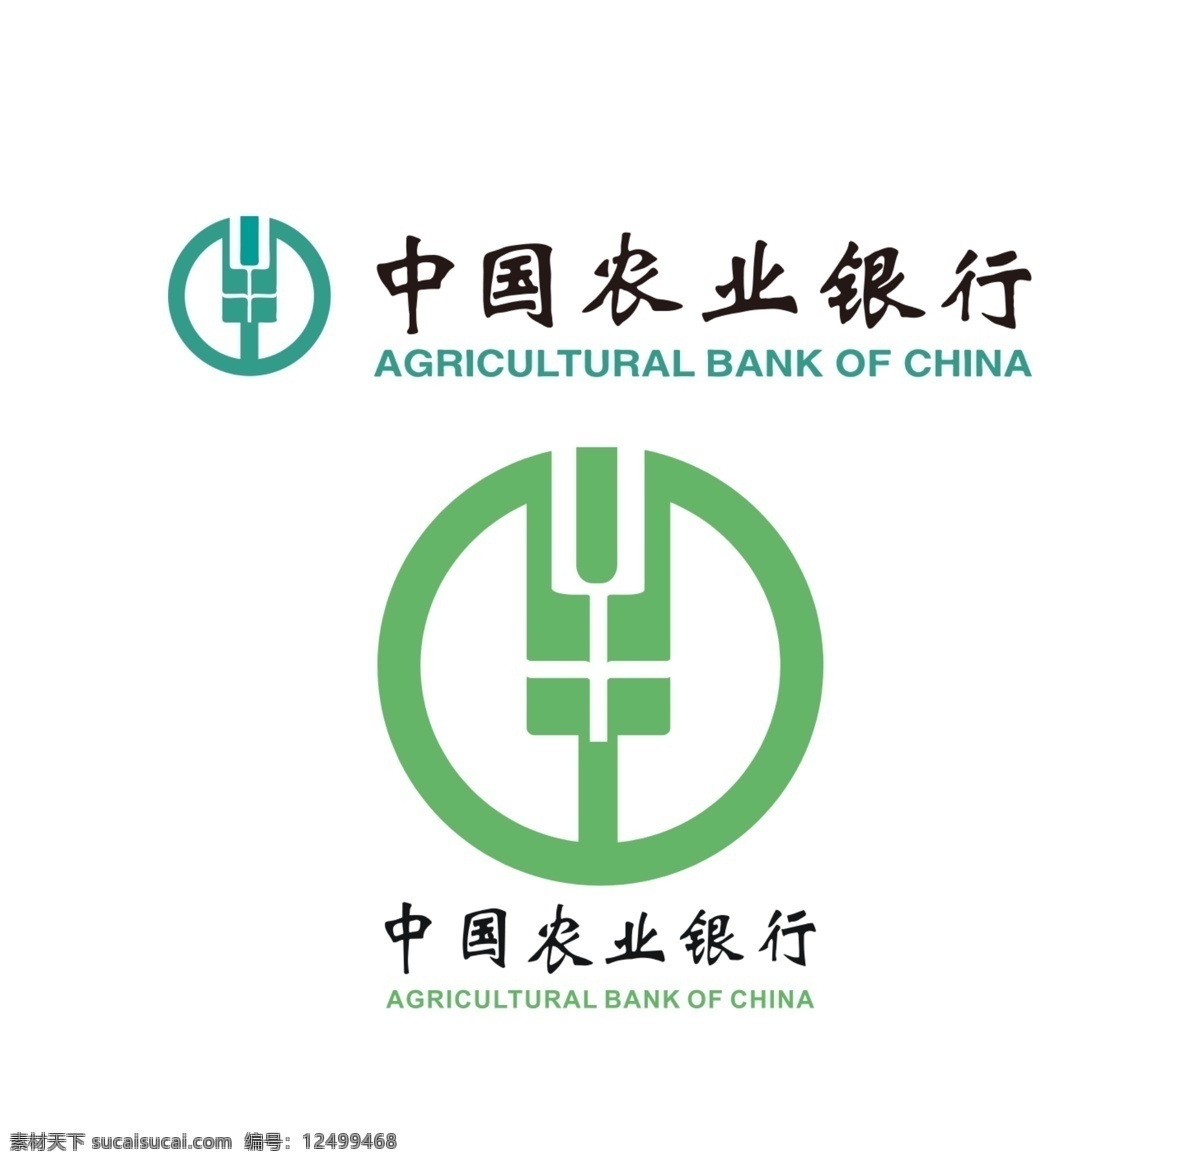 中国农业银行 农业银行 农业银行标志 logo 农行 农行标志 农行logo